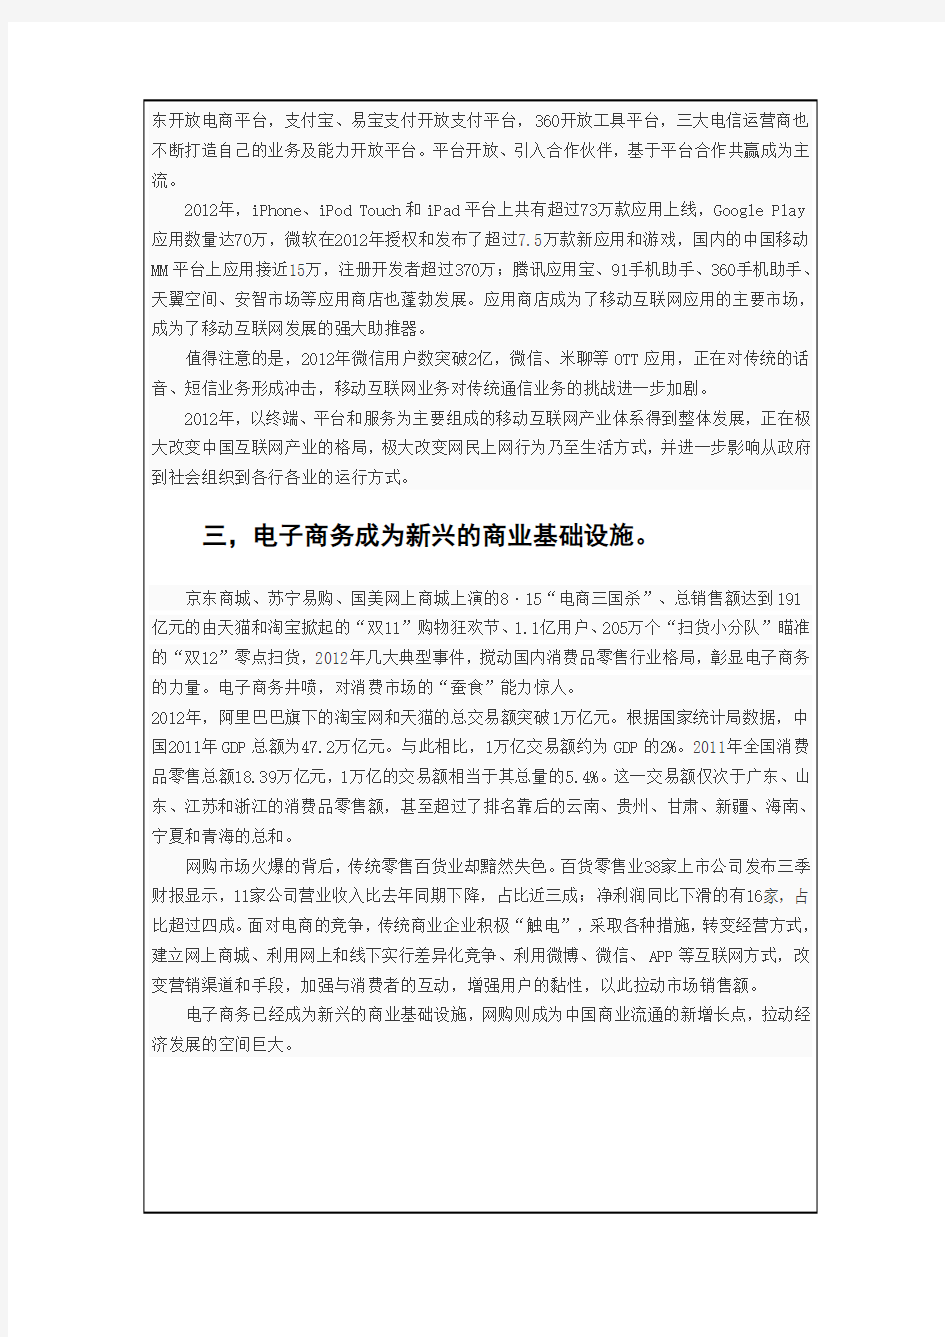 中国互联网产业发展综述报告